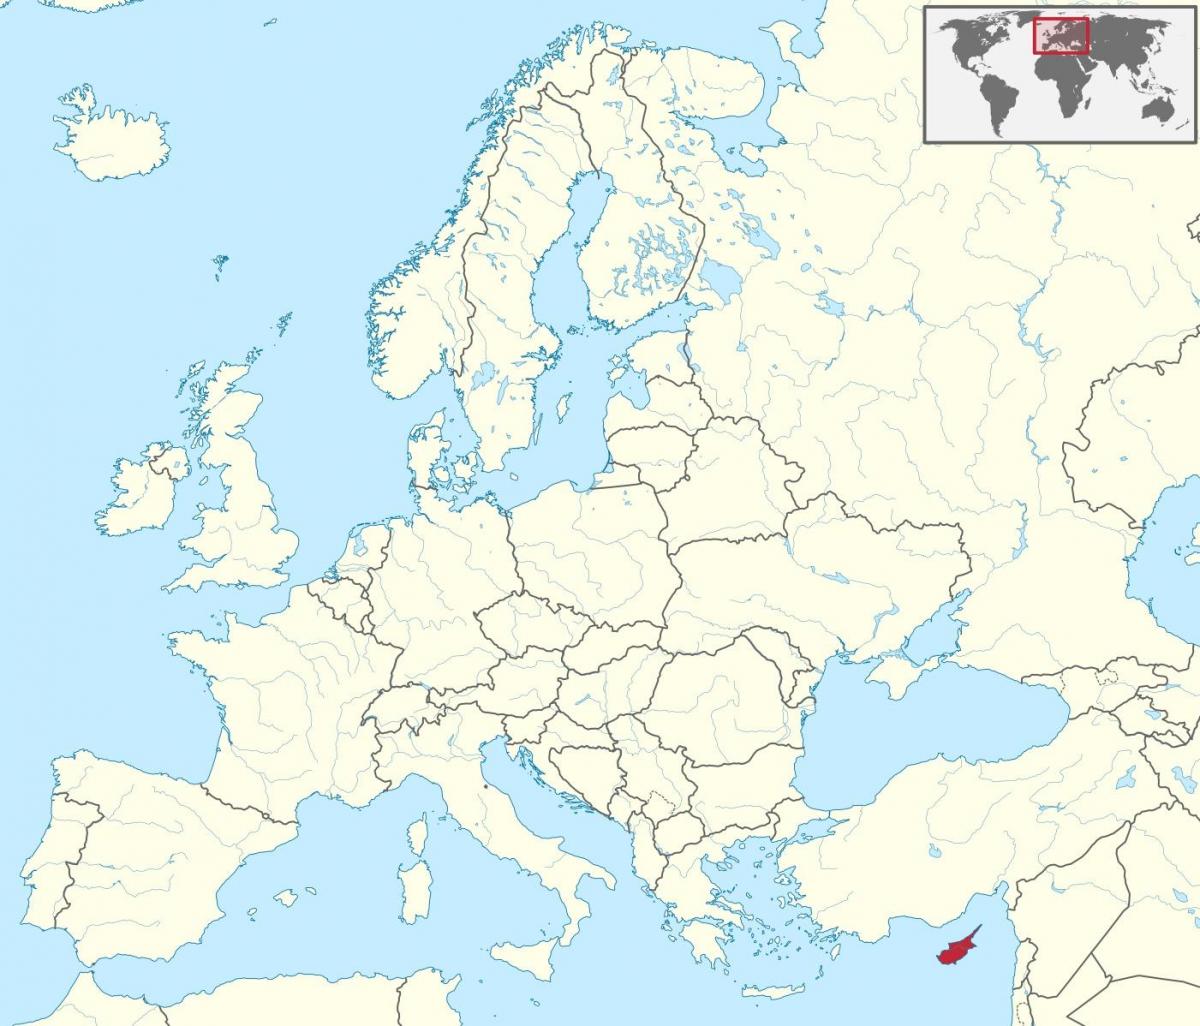 Cyprus peta di dunia